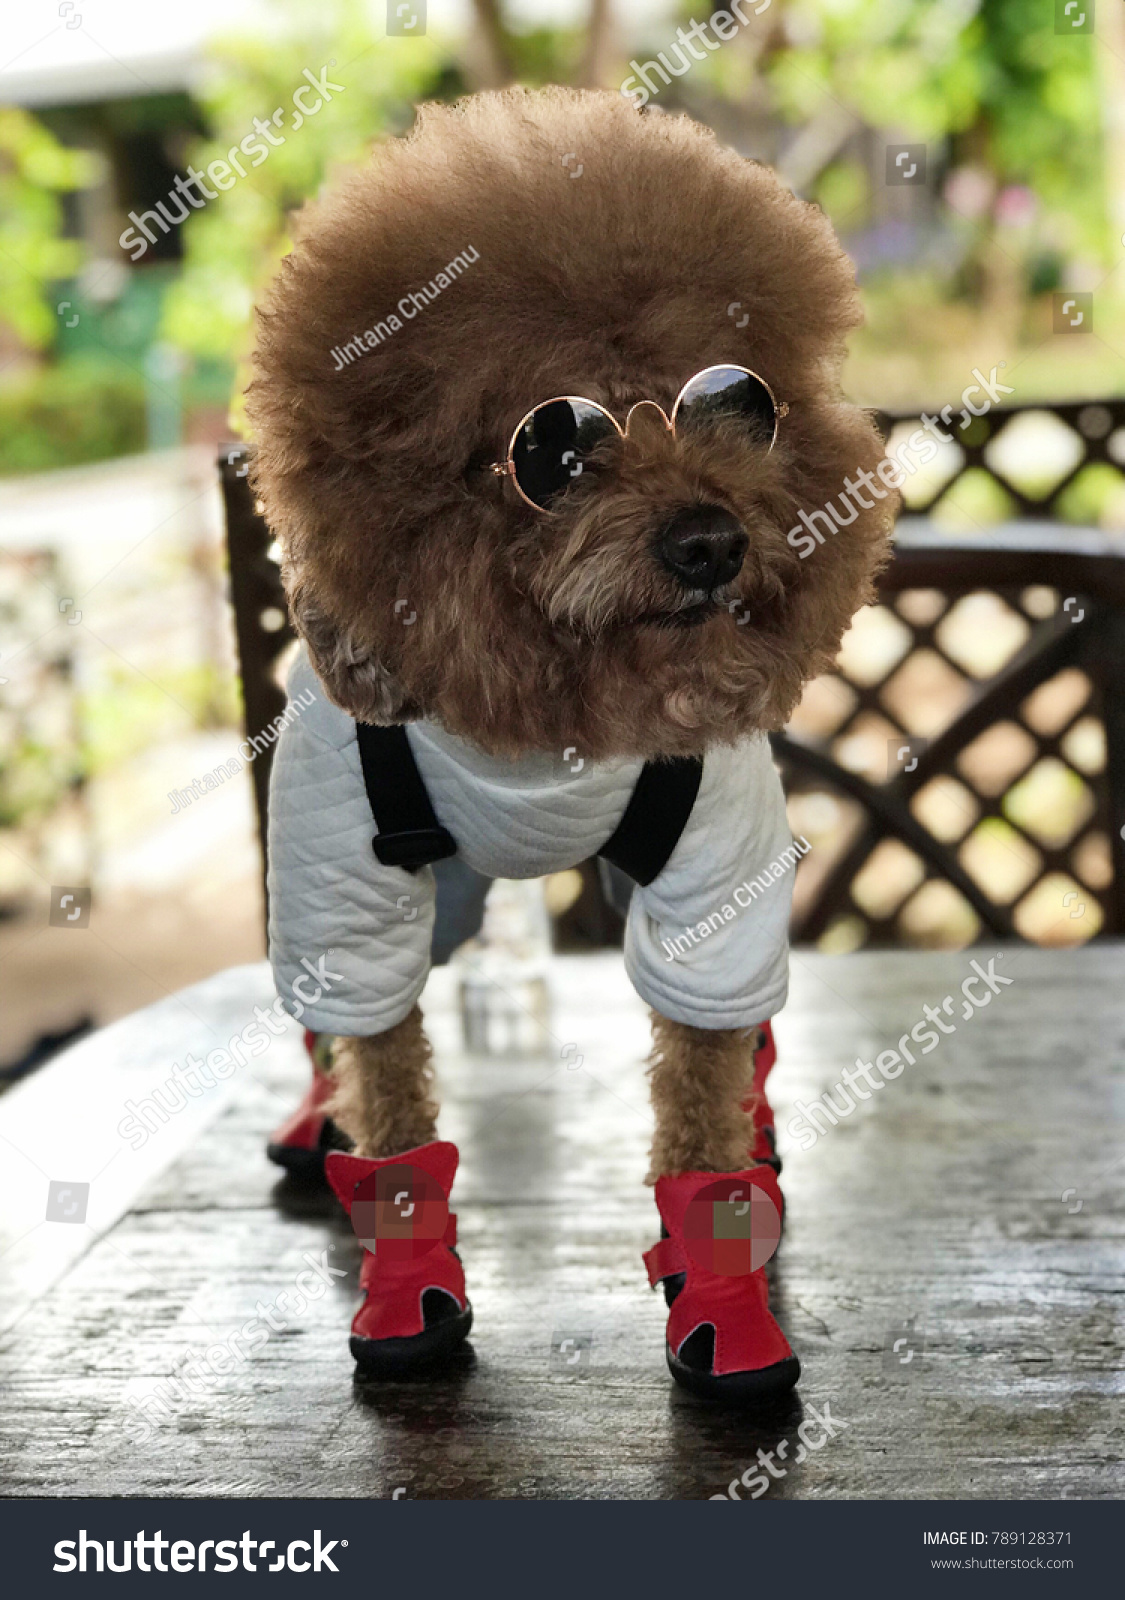 cool dog wearing sunglasses